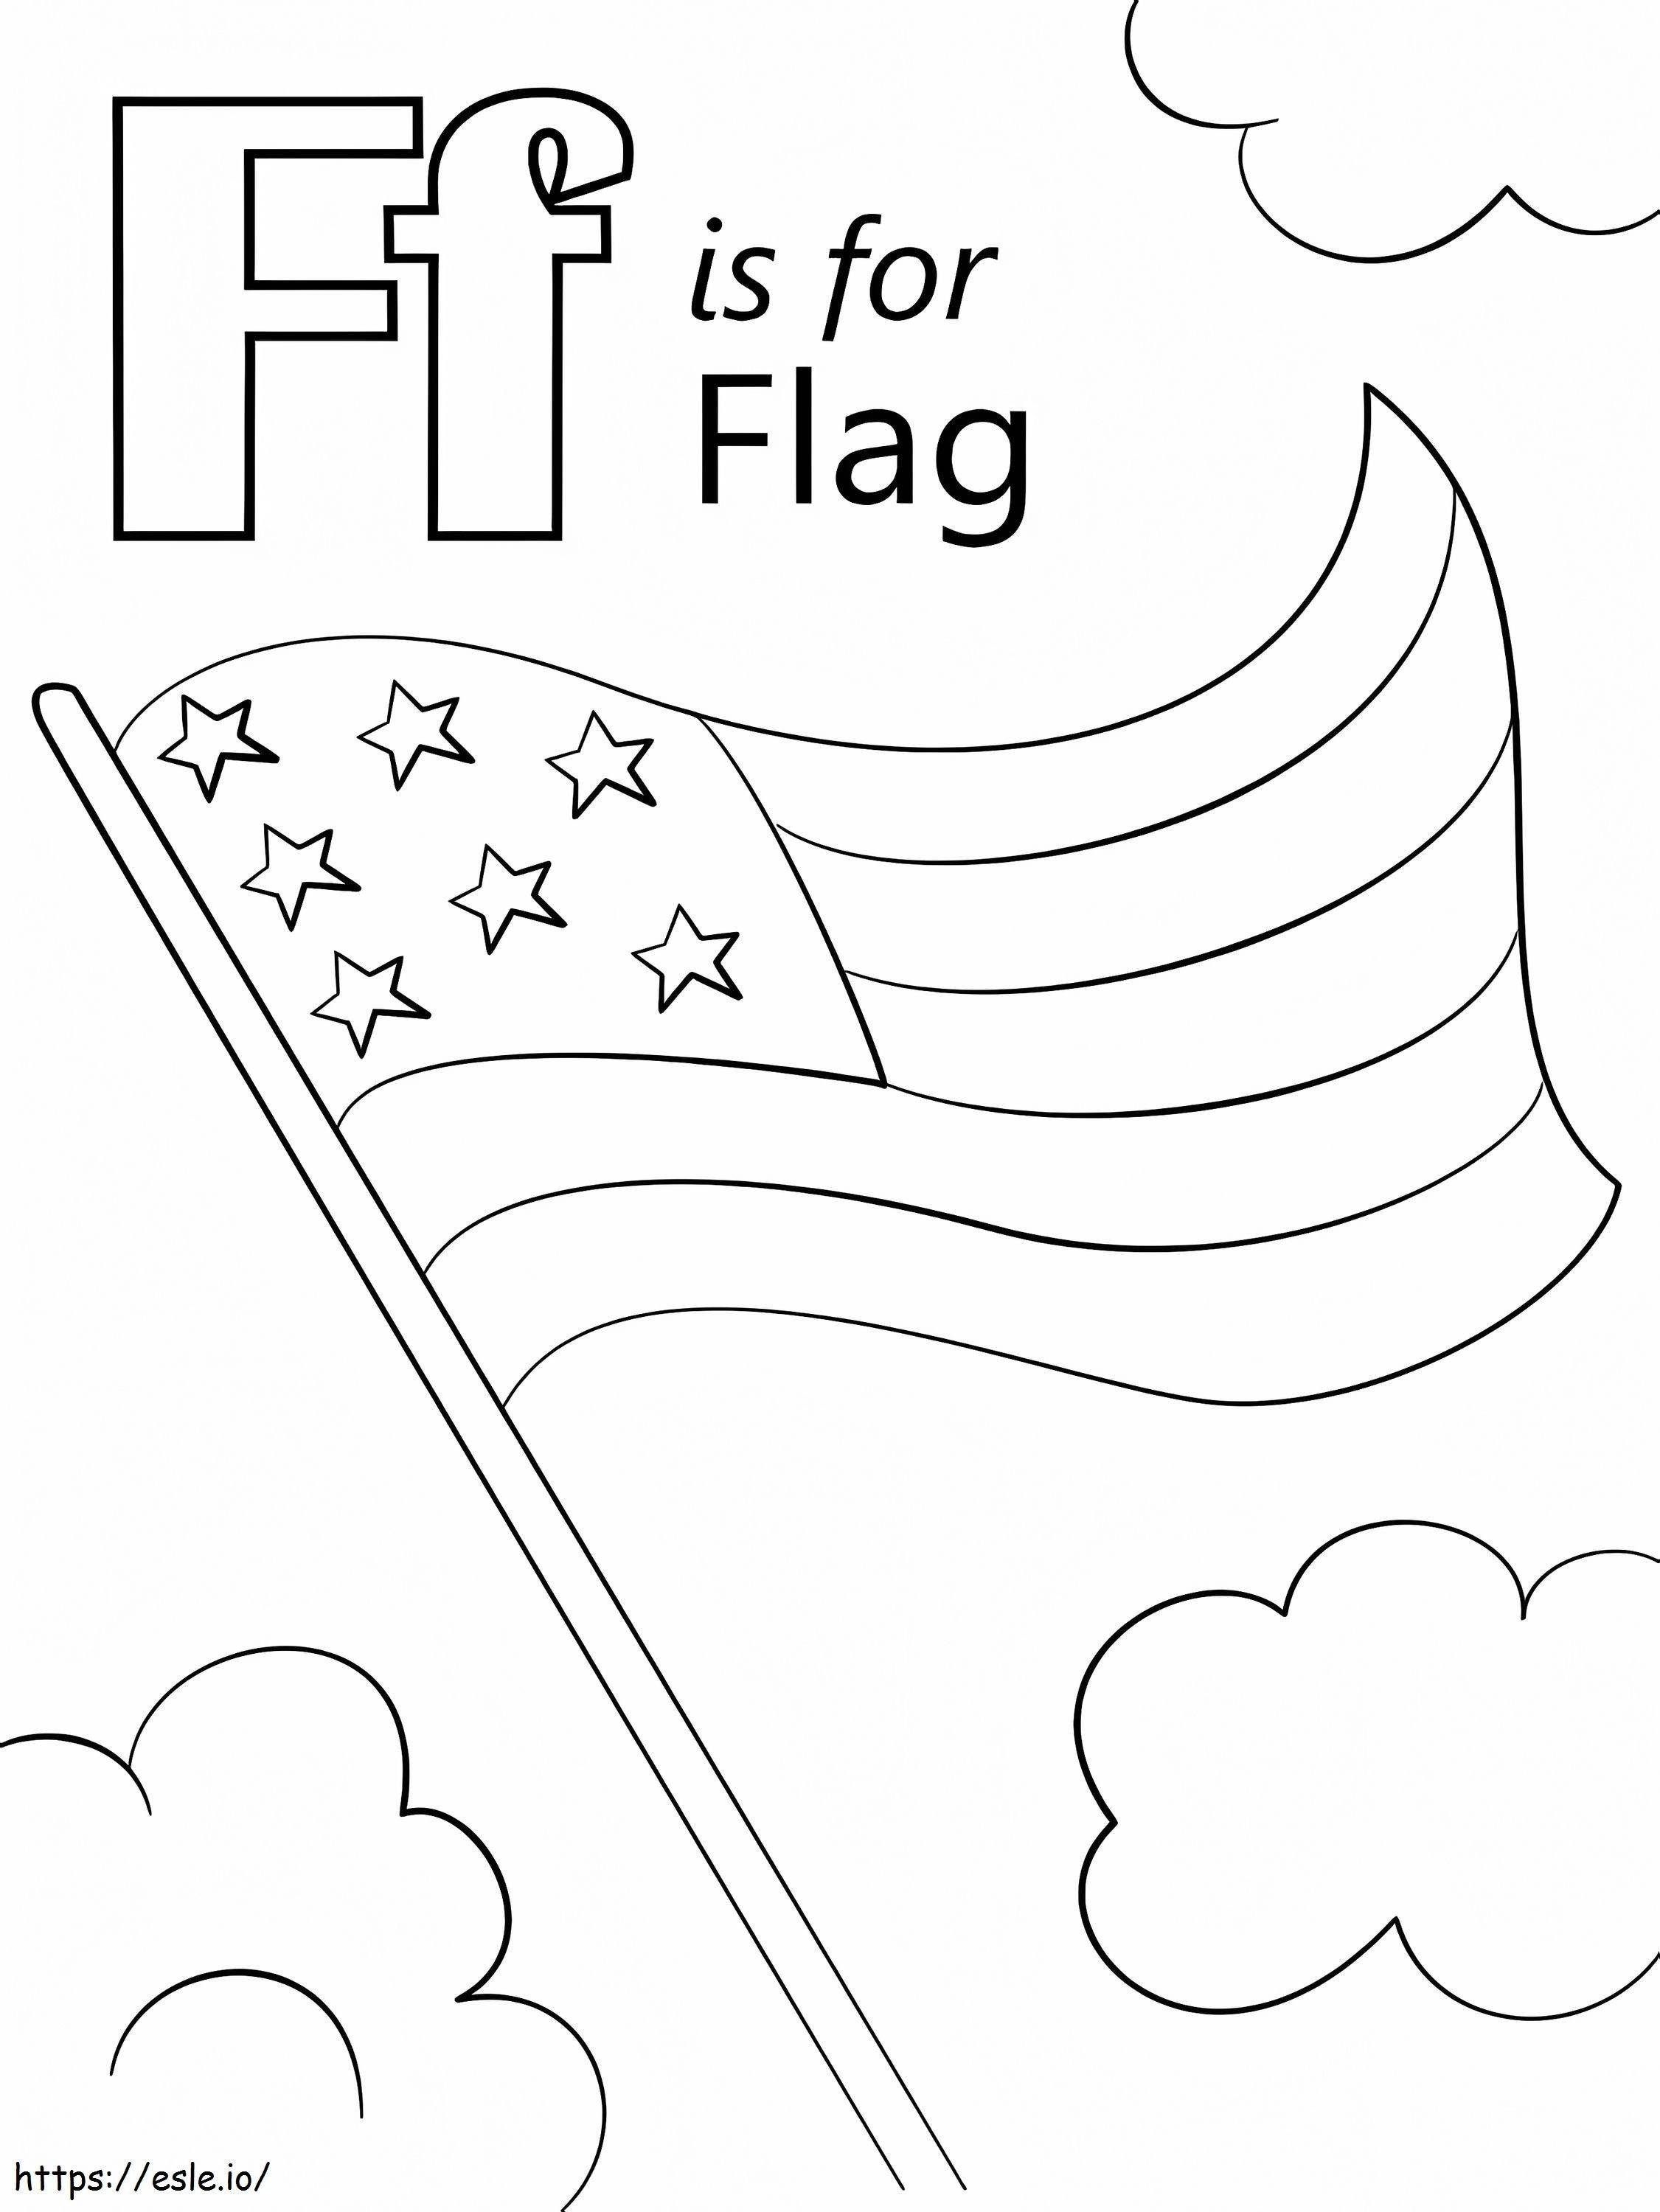 Flaggenbuchstabe F ausmalbilder